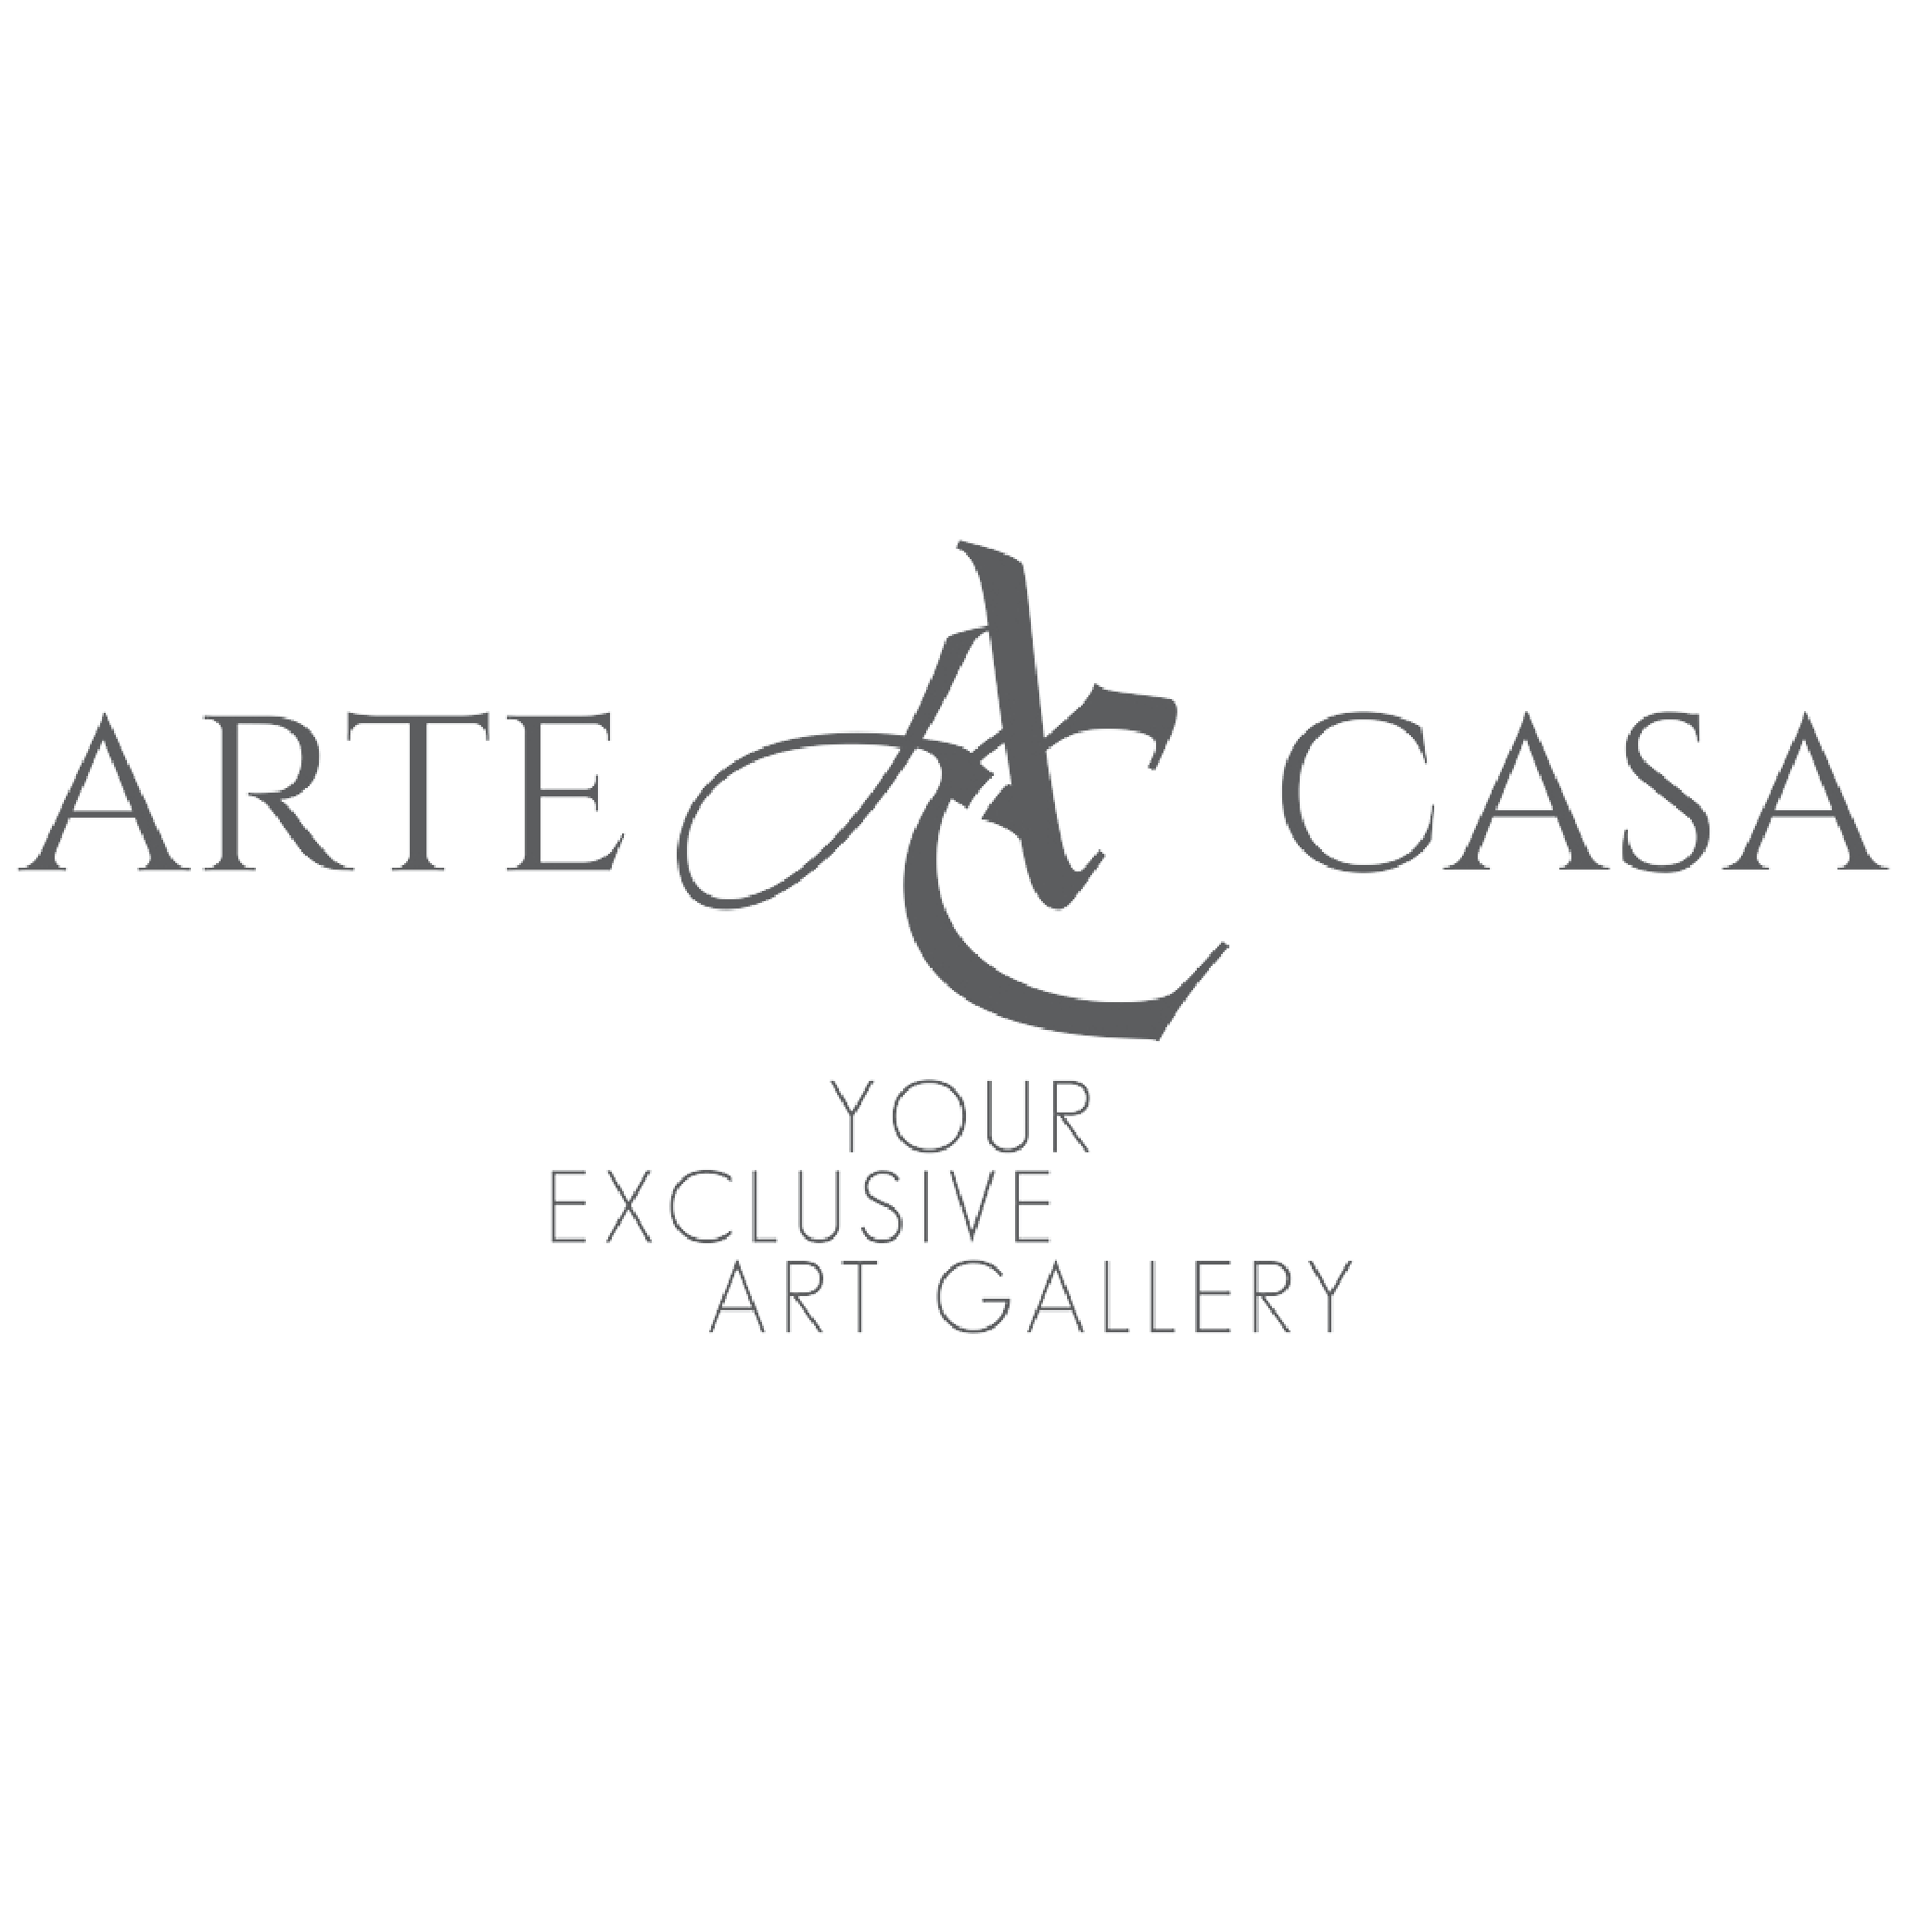 ArteCasa Gallery